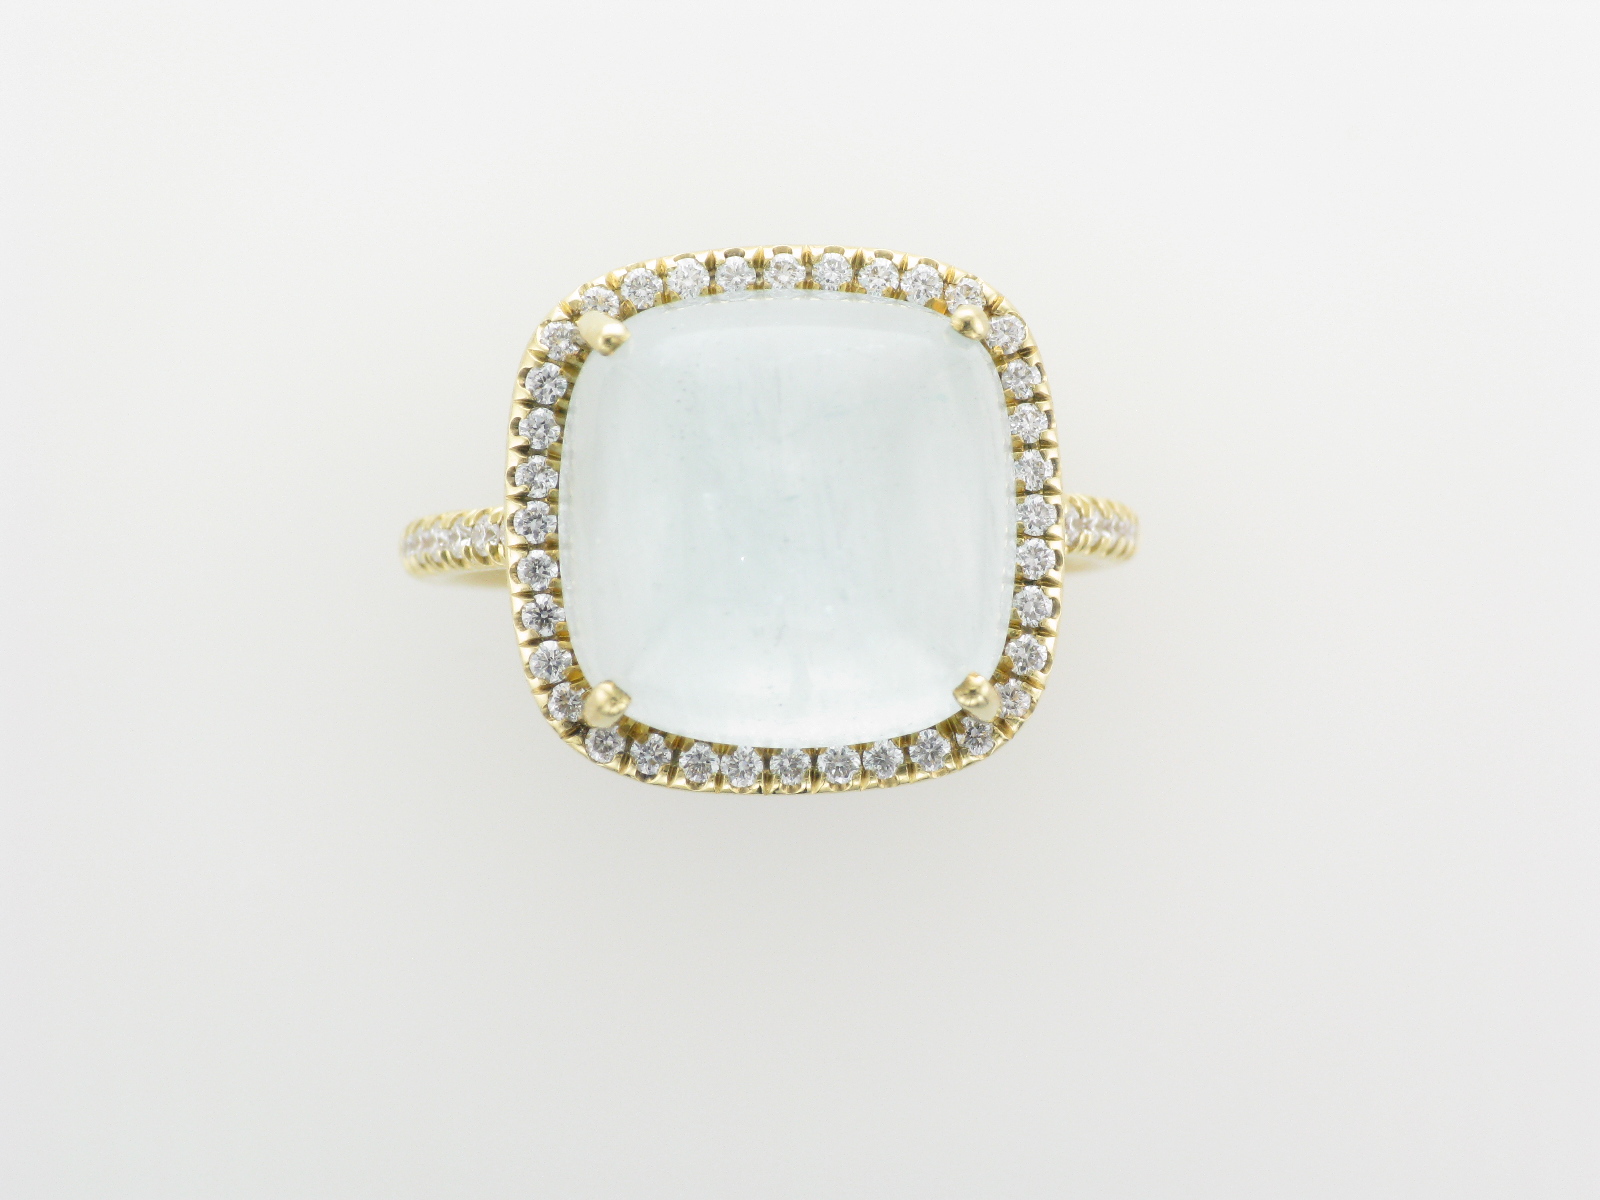 11 Carat Aquamarine and Diamond Ring